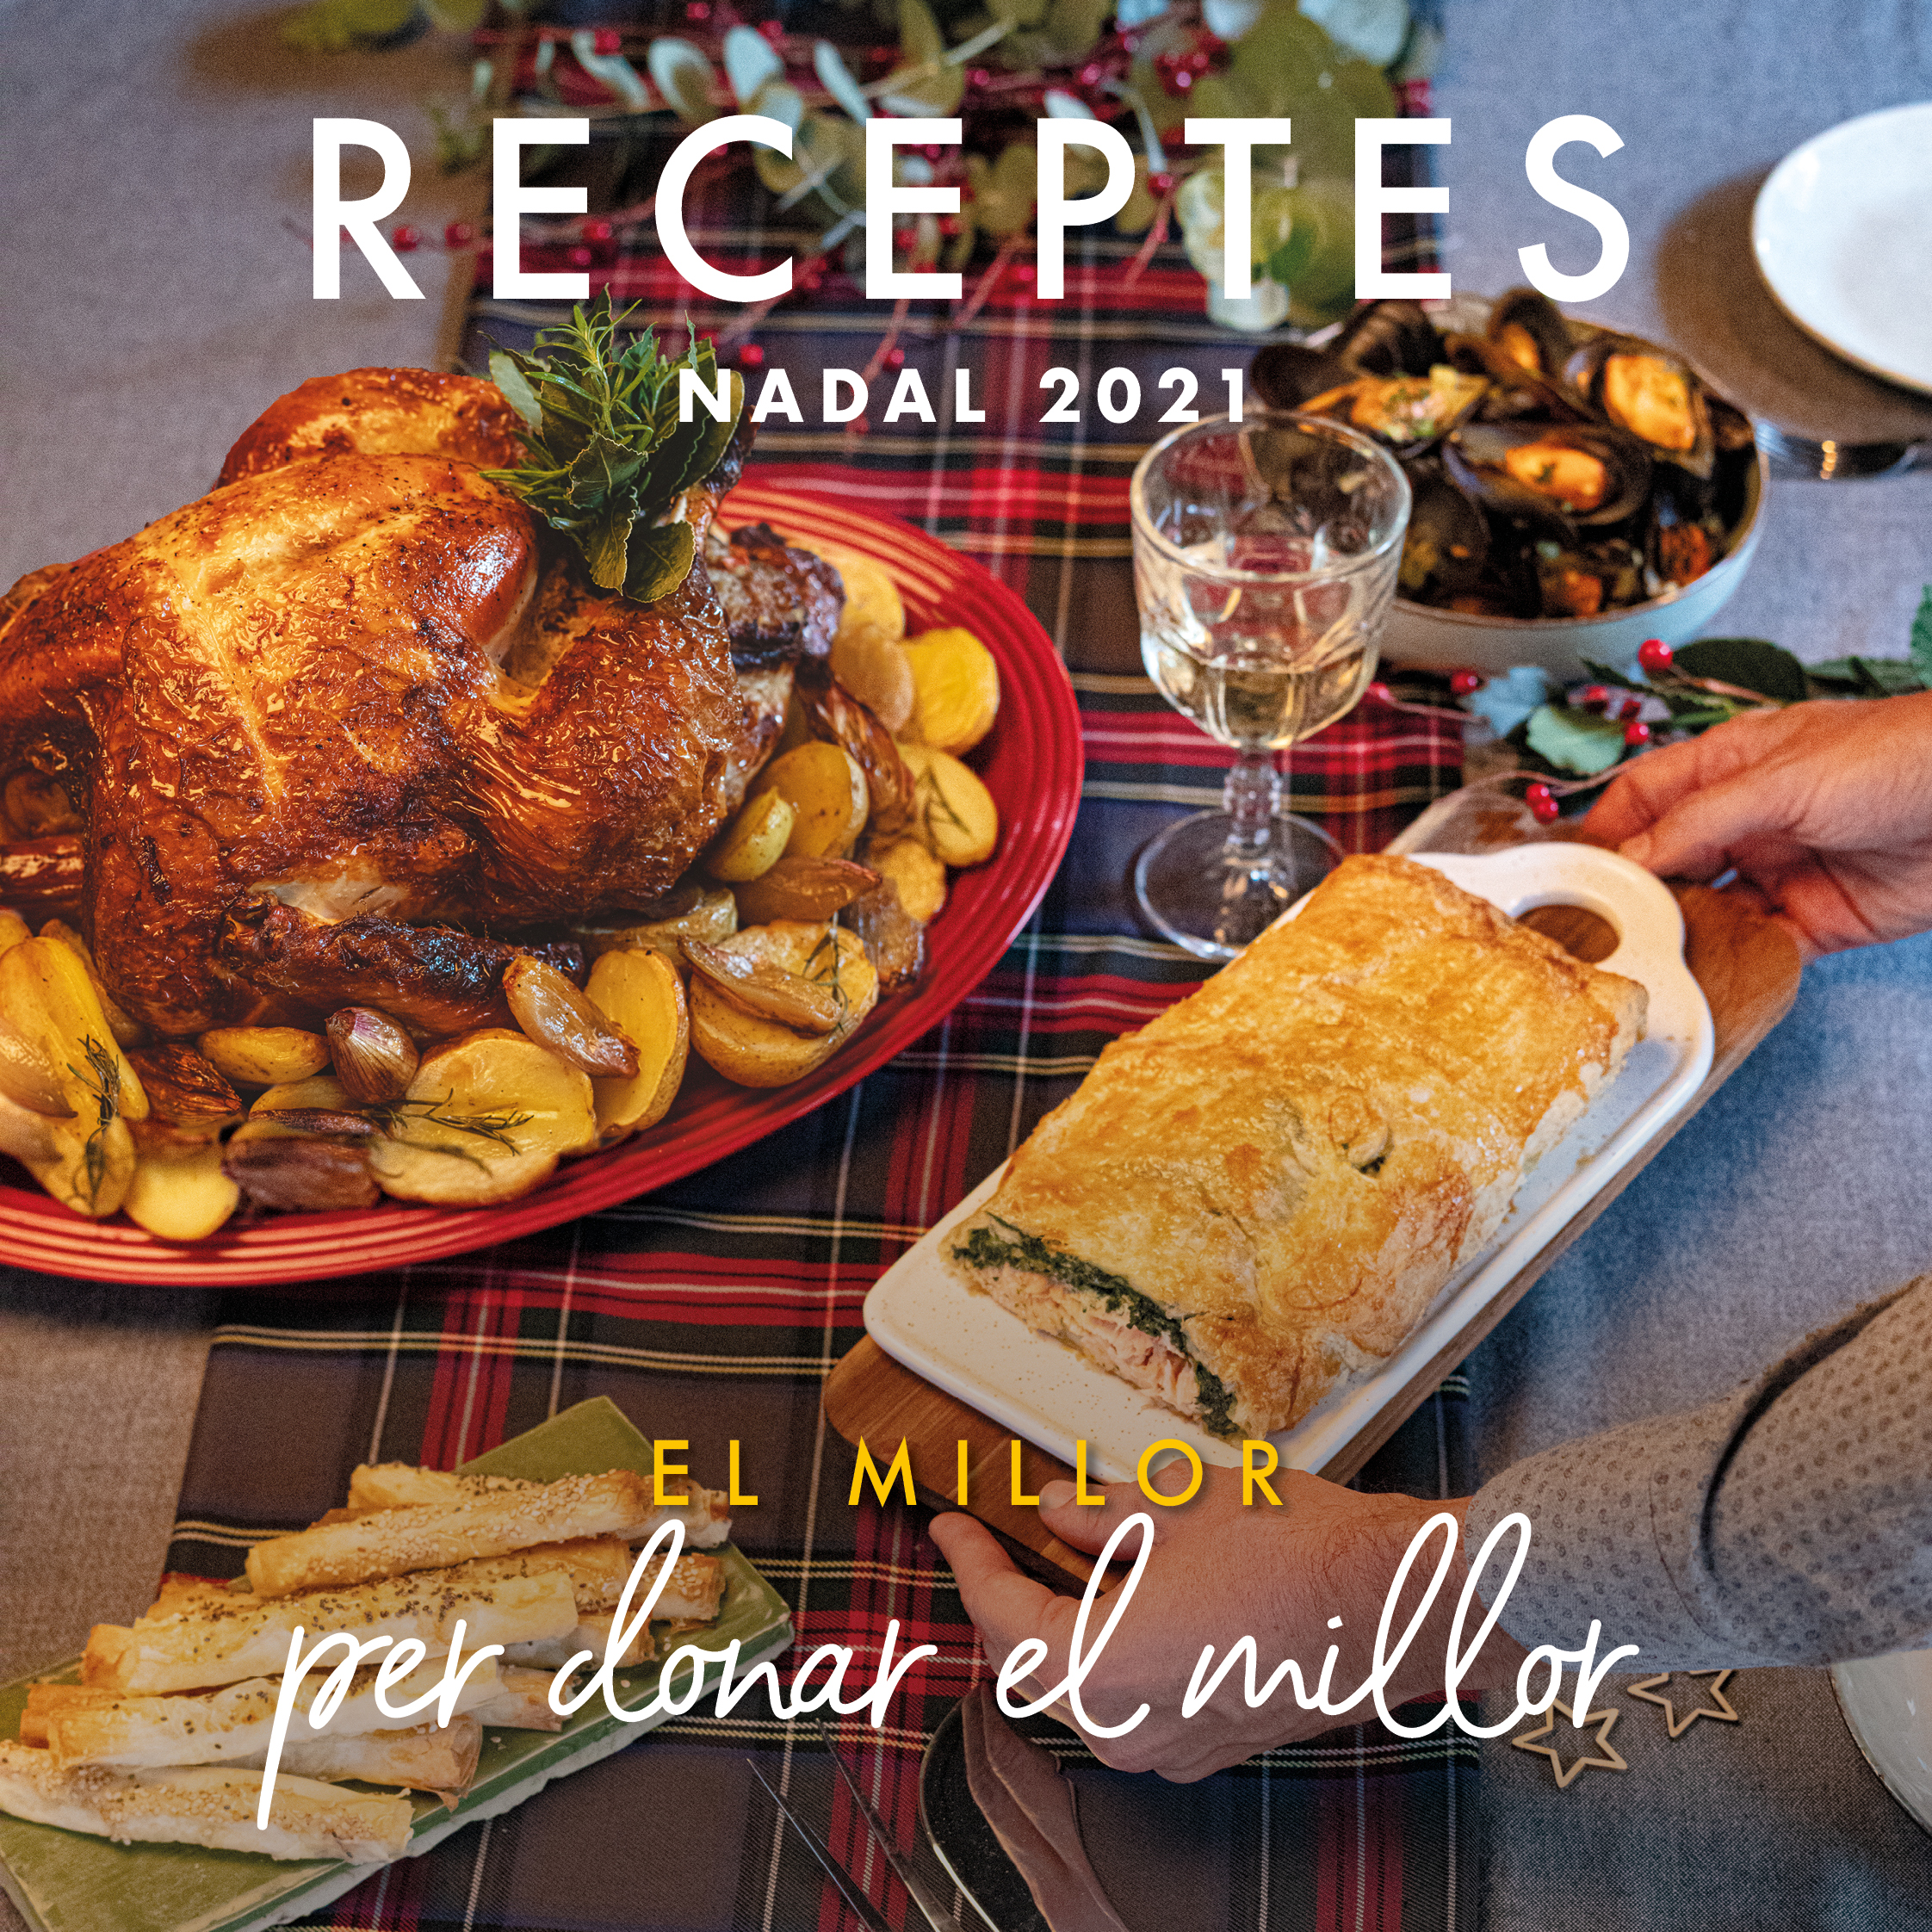 Imagen folleto recetas navidad